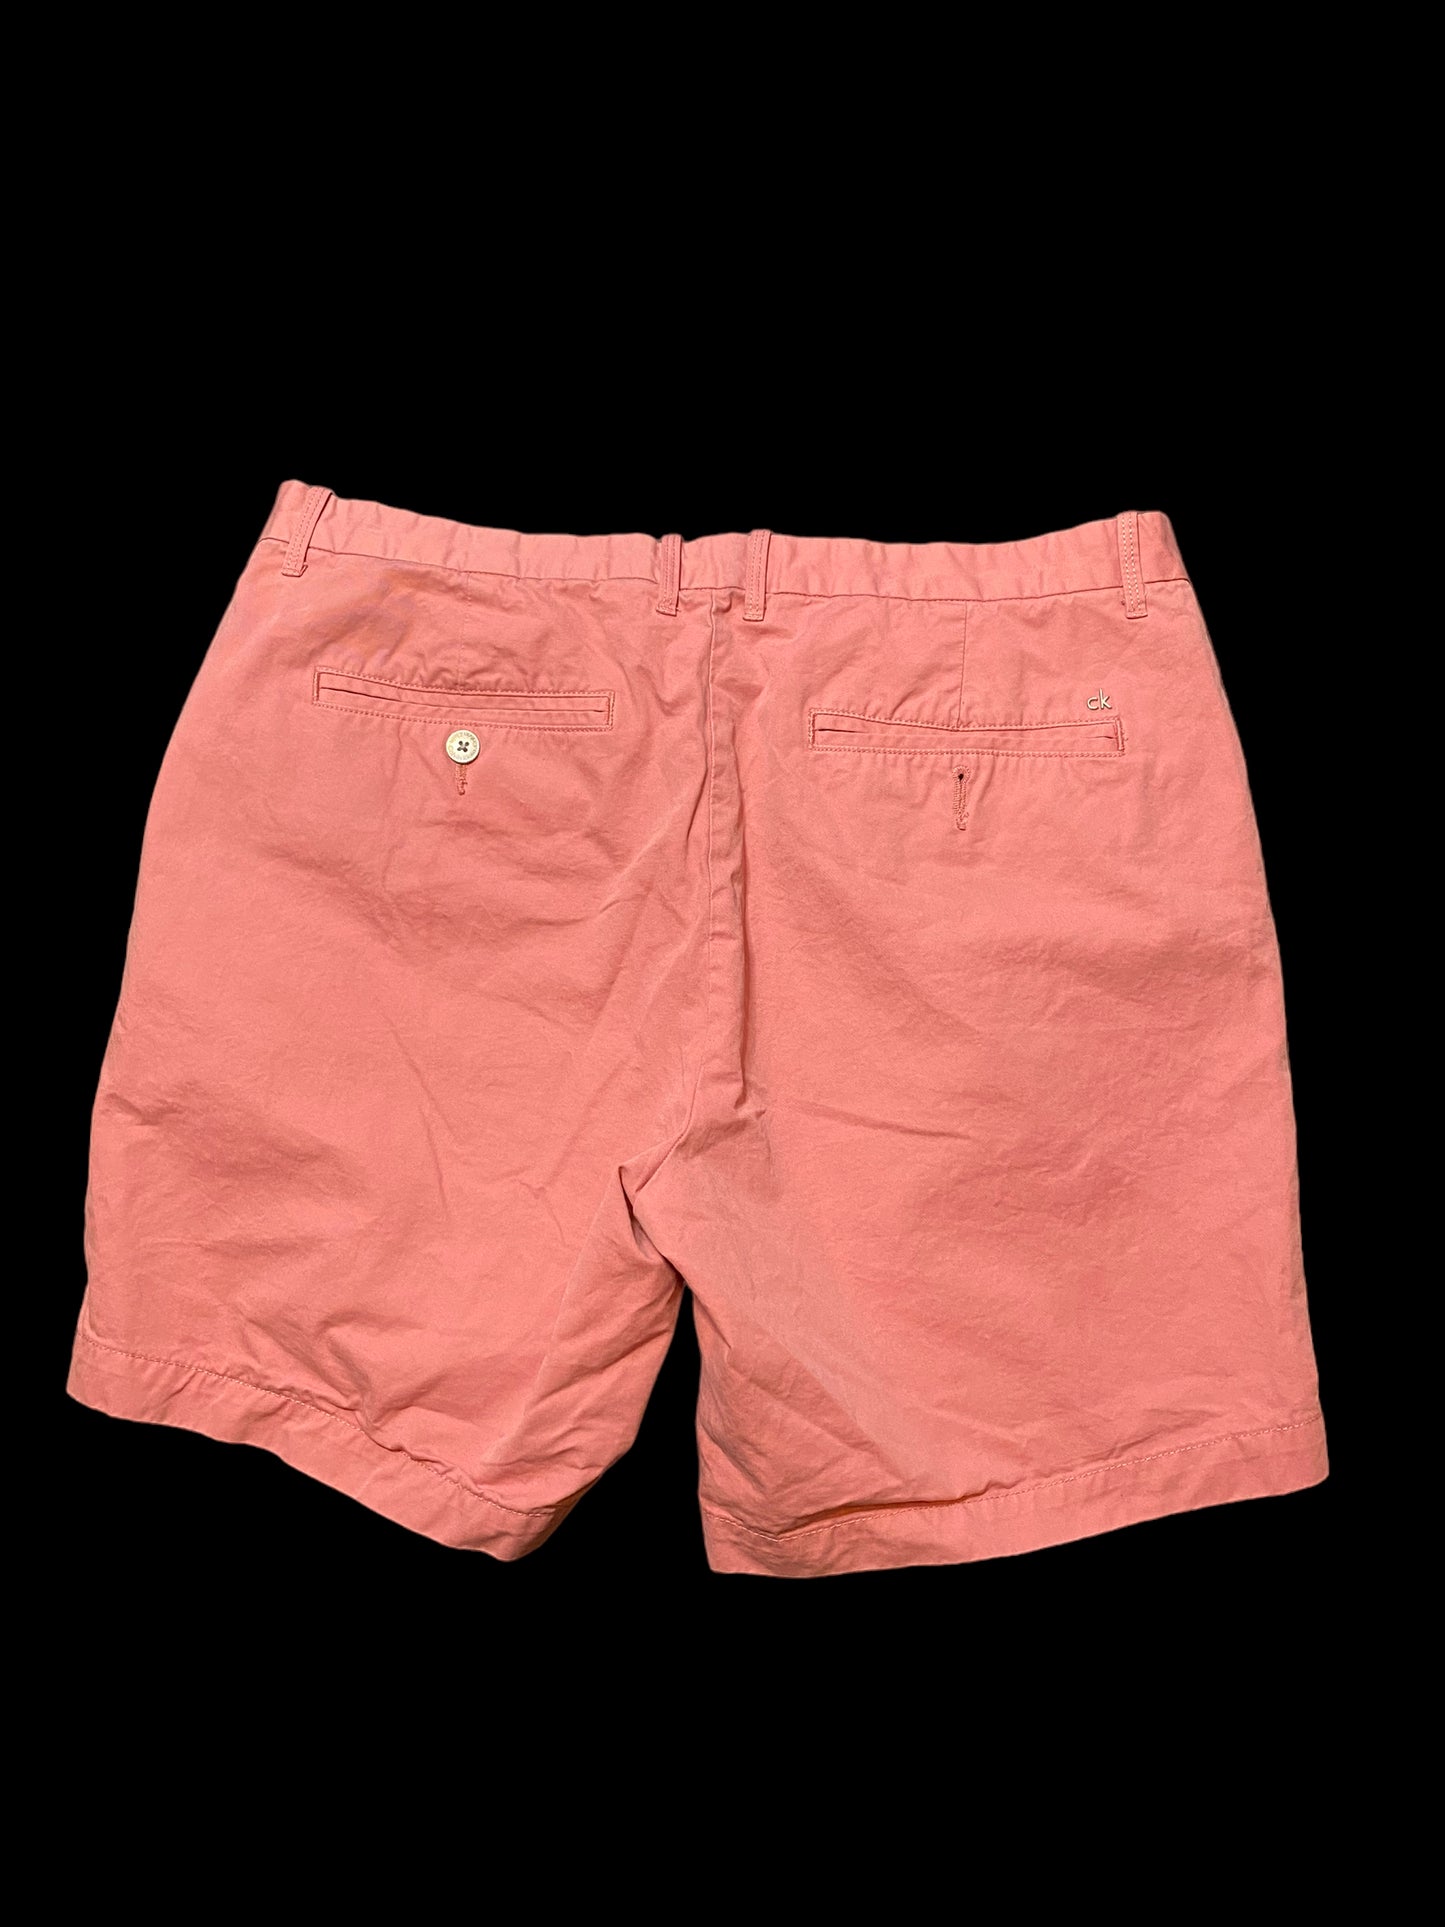 Calvin Klein Pink Khacki Shorts